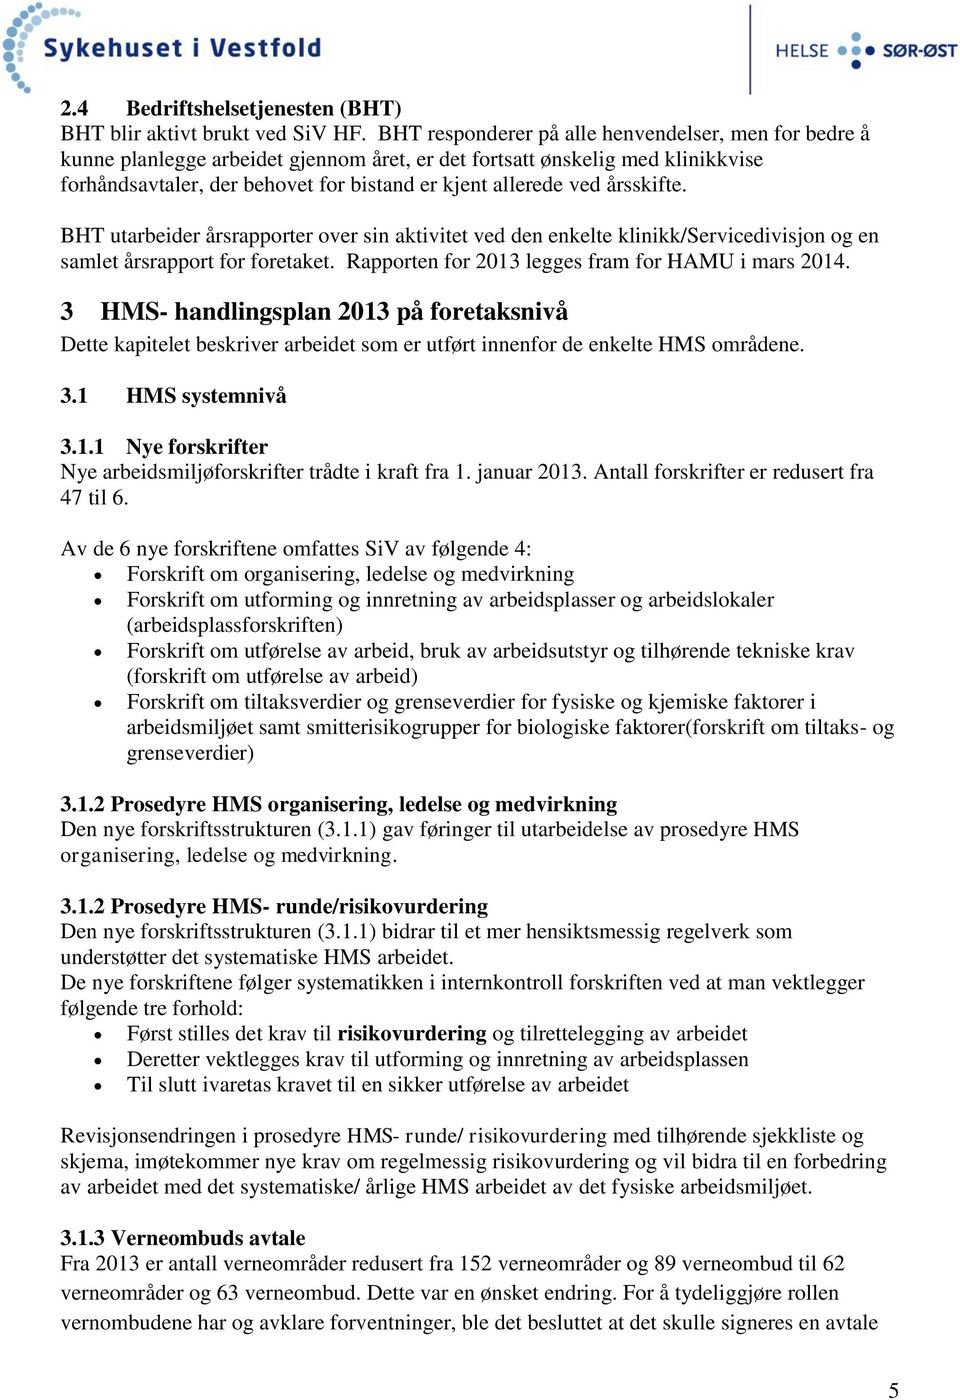 årsskifte. BHT utarbeider årsrapporter over sin aktivitet ved den enkelte klinikk/servicedivisjon og en samlet årsrapport for foretaket. Rapporten for 2013 legges fram for HAMU i mars 2014.